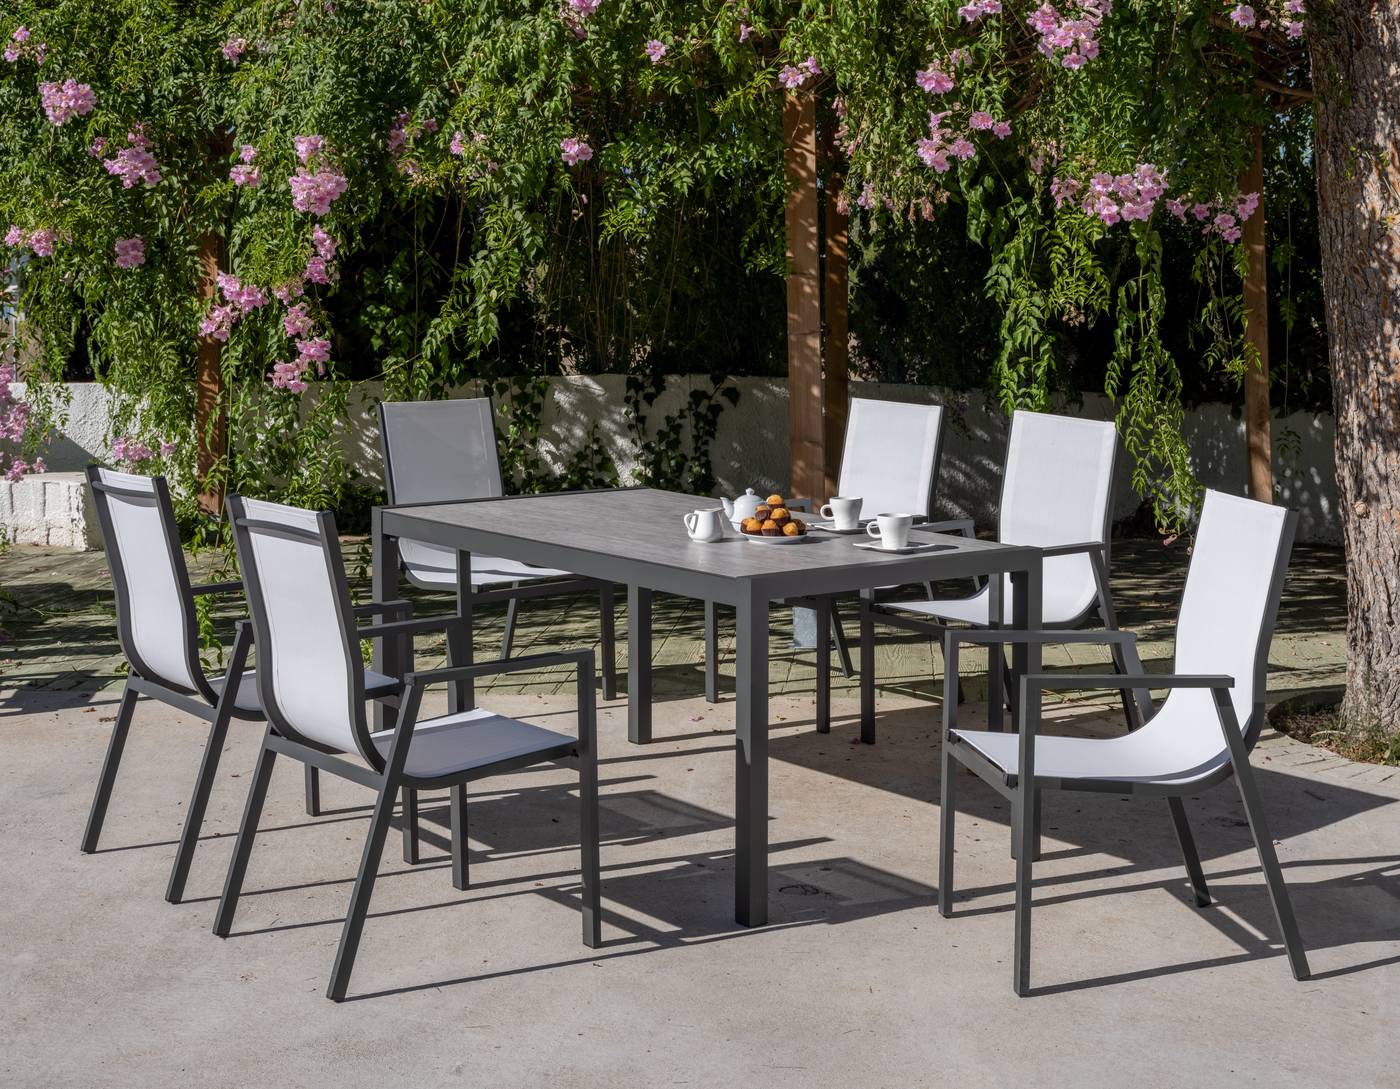 Conjunto formado por: Mesa rectangular aluminio con tablero HPL de 160 cm + 4 sillones de aluminio y textilen. Colores: blanco y antracita.